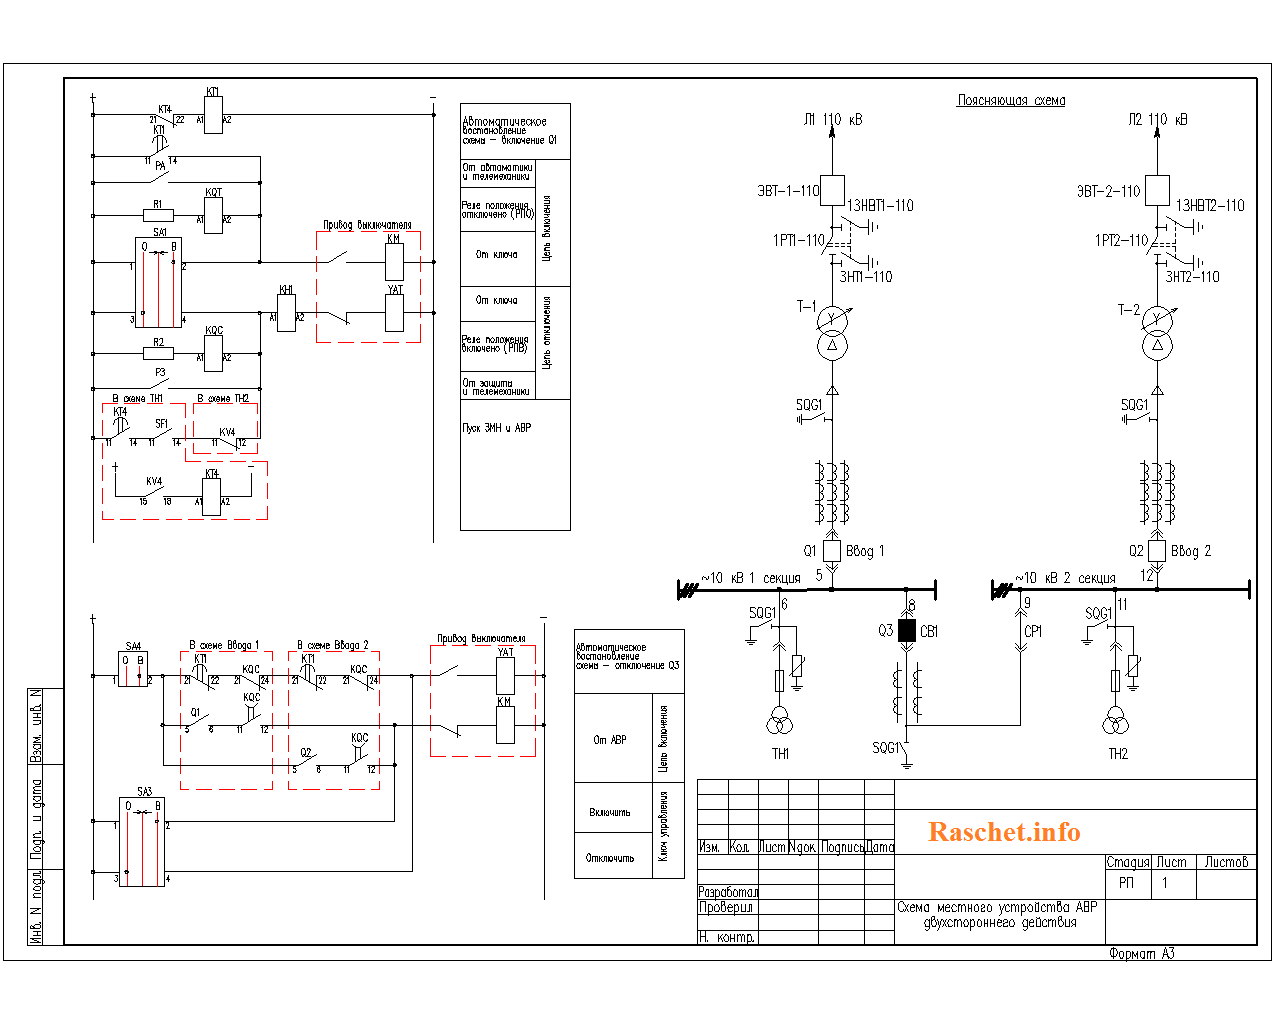 Схема местного устройства АВР двухстороннего действия на секционном выключателе 6 (10) кВ